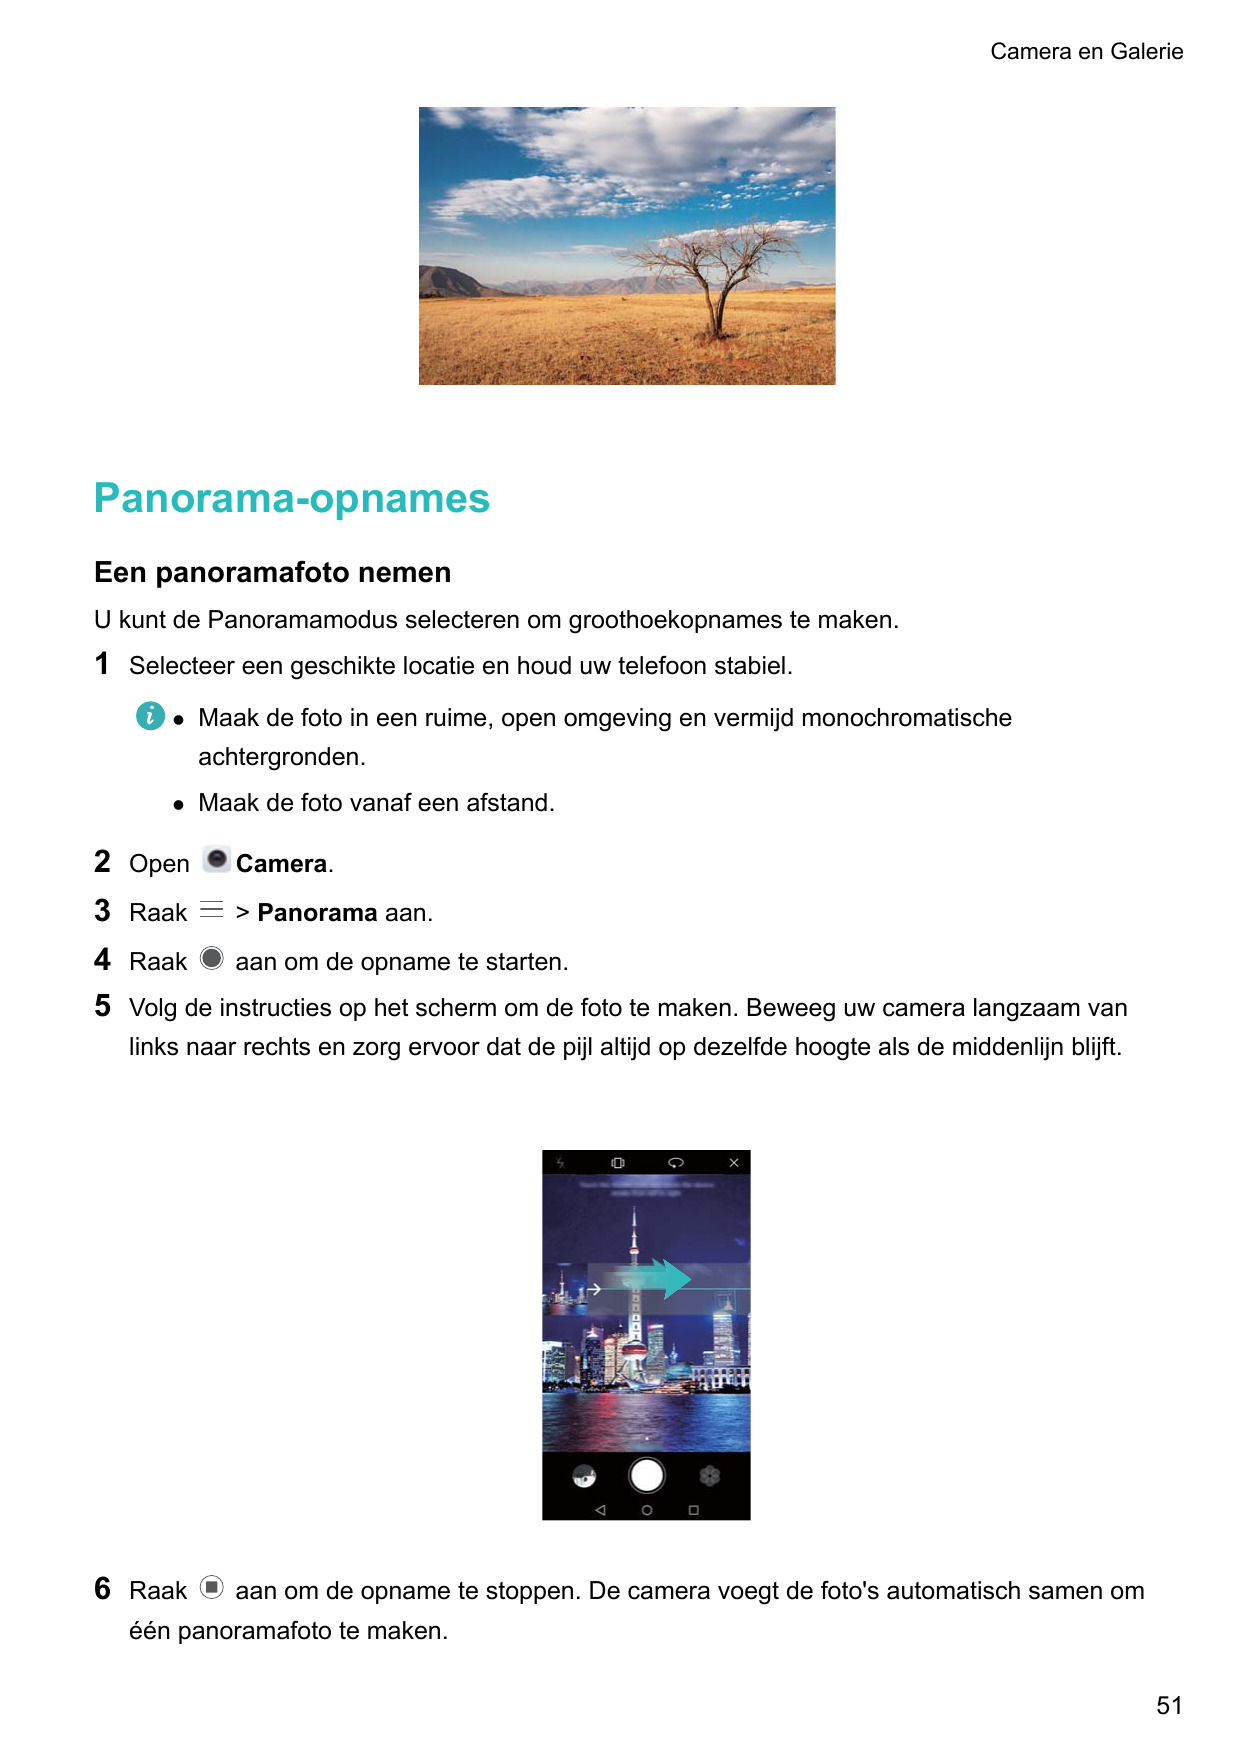 Camera en GaleriePanorama-opnamesEen panoramafoto nemenU kunt de Panoramamodus selecteren om groothoekopnames te maken.1Selectee